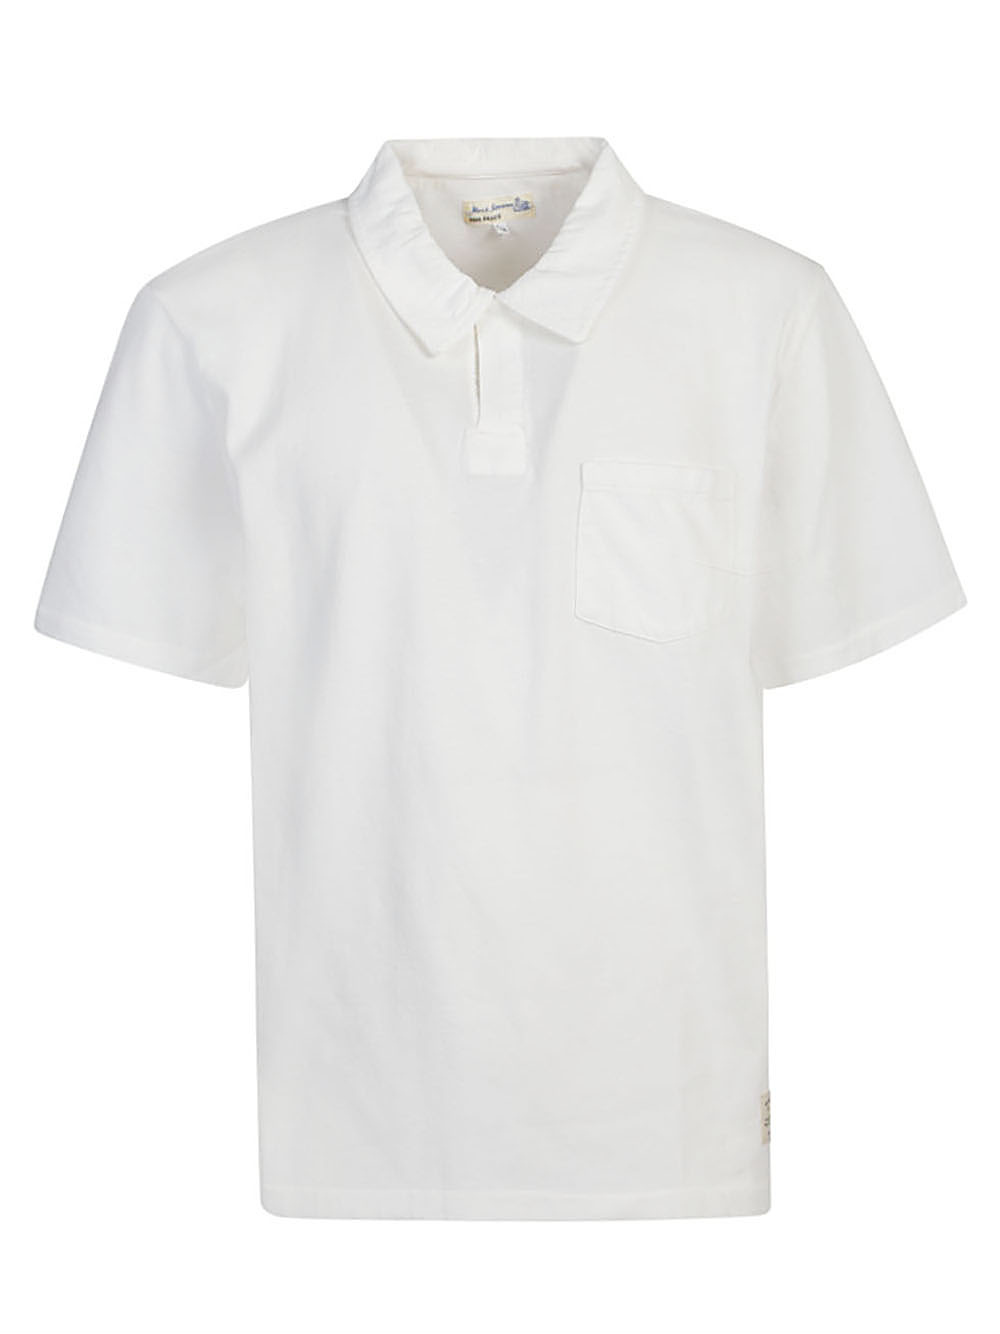 Merz b. schwanen MERZ B. SCHWANEN- Organic Cotton Polo Shirt